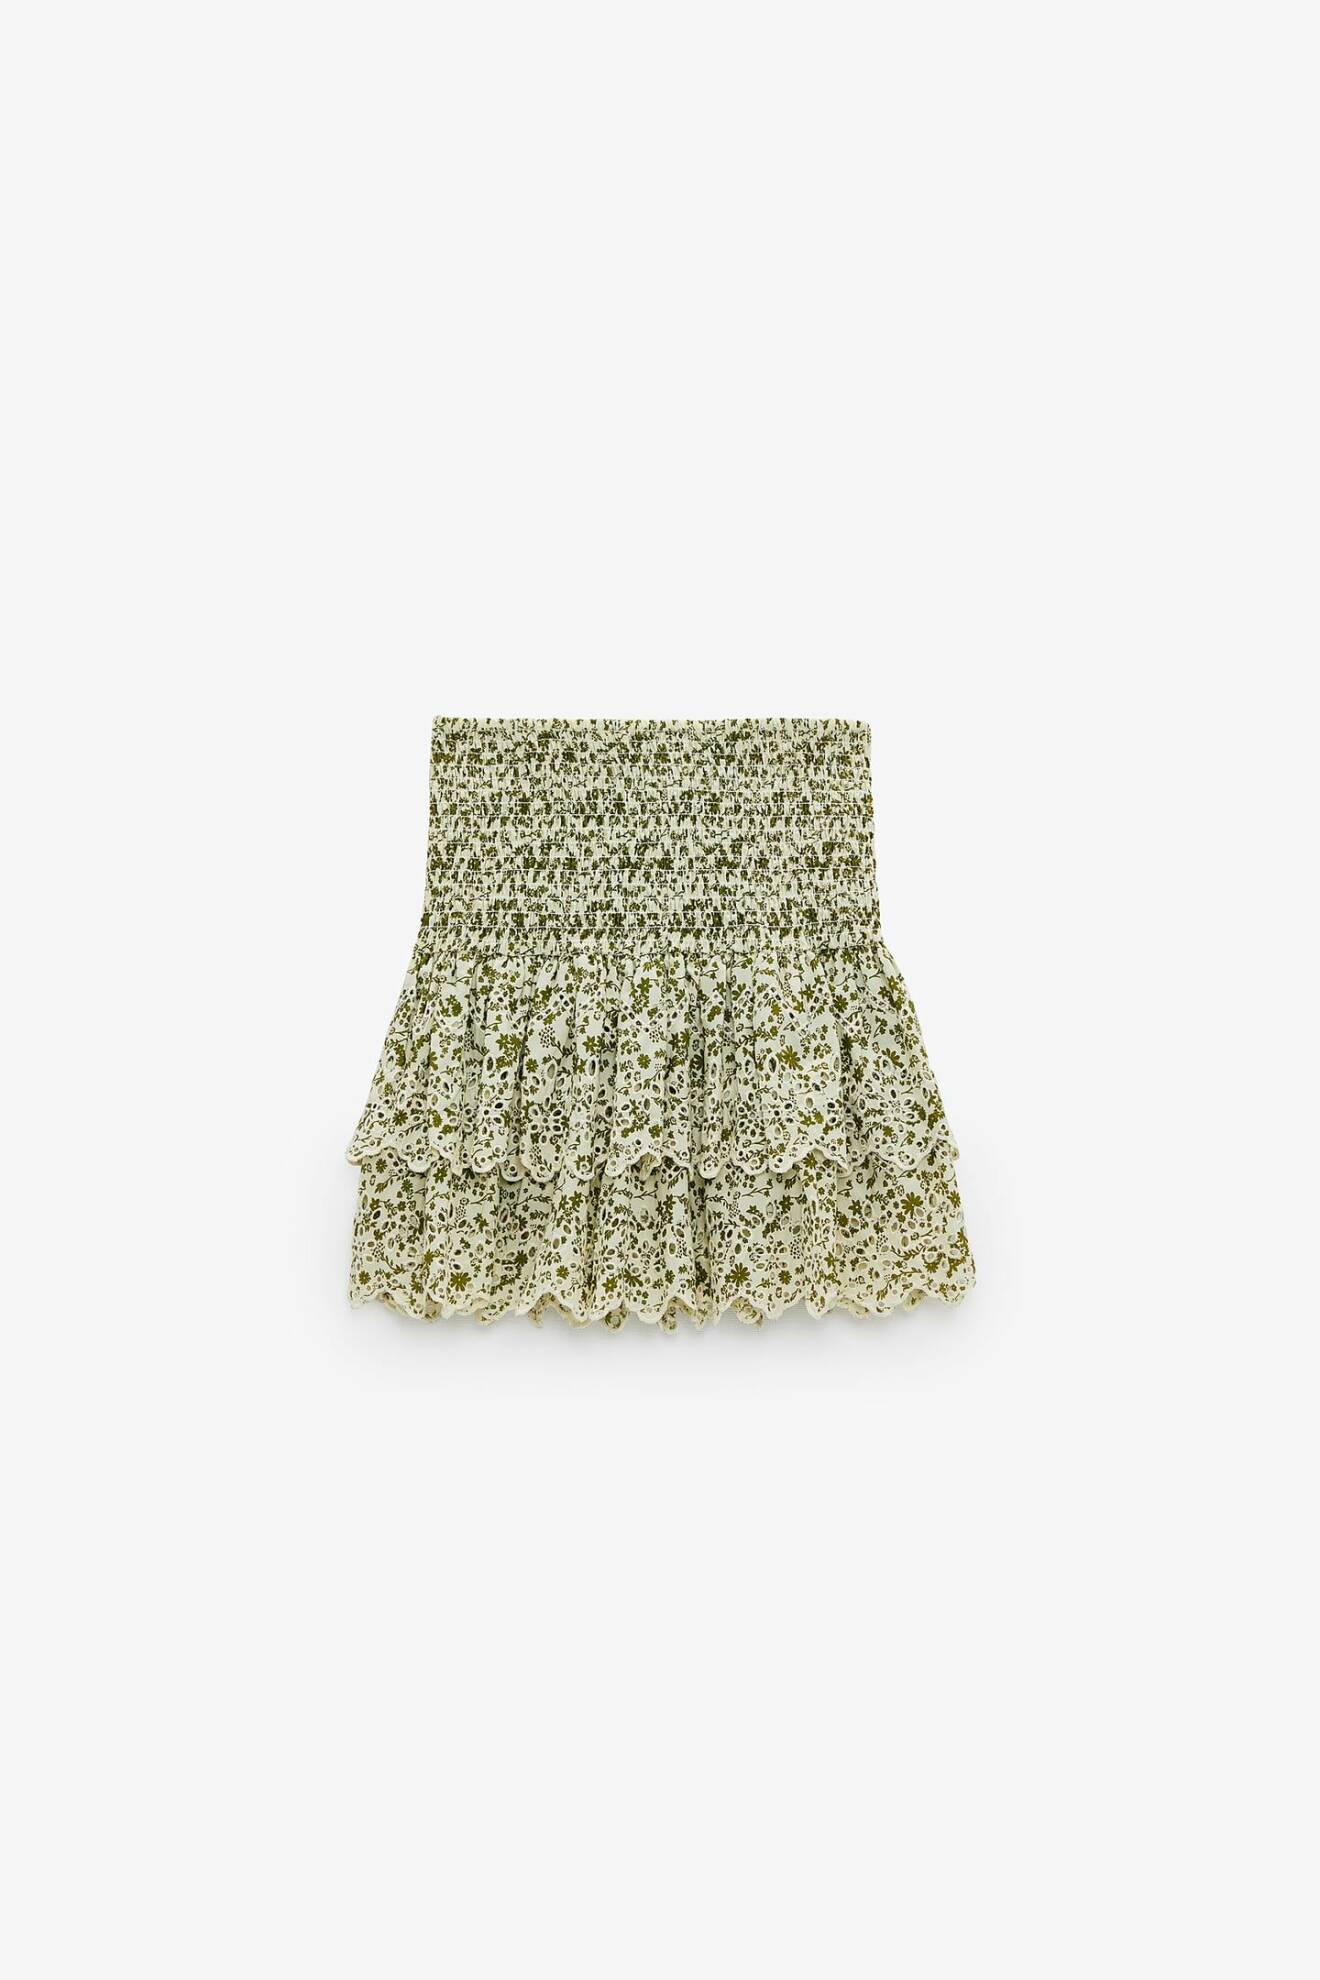 Blommig kjol i kort modell i gröna nyanser. Bred resår över magen och två lager med volangkant. Kjol från Zara.